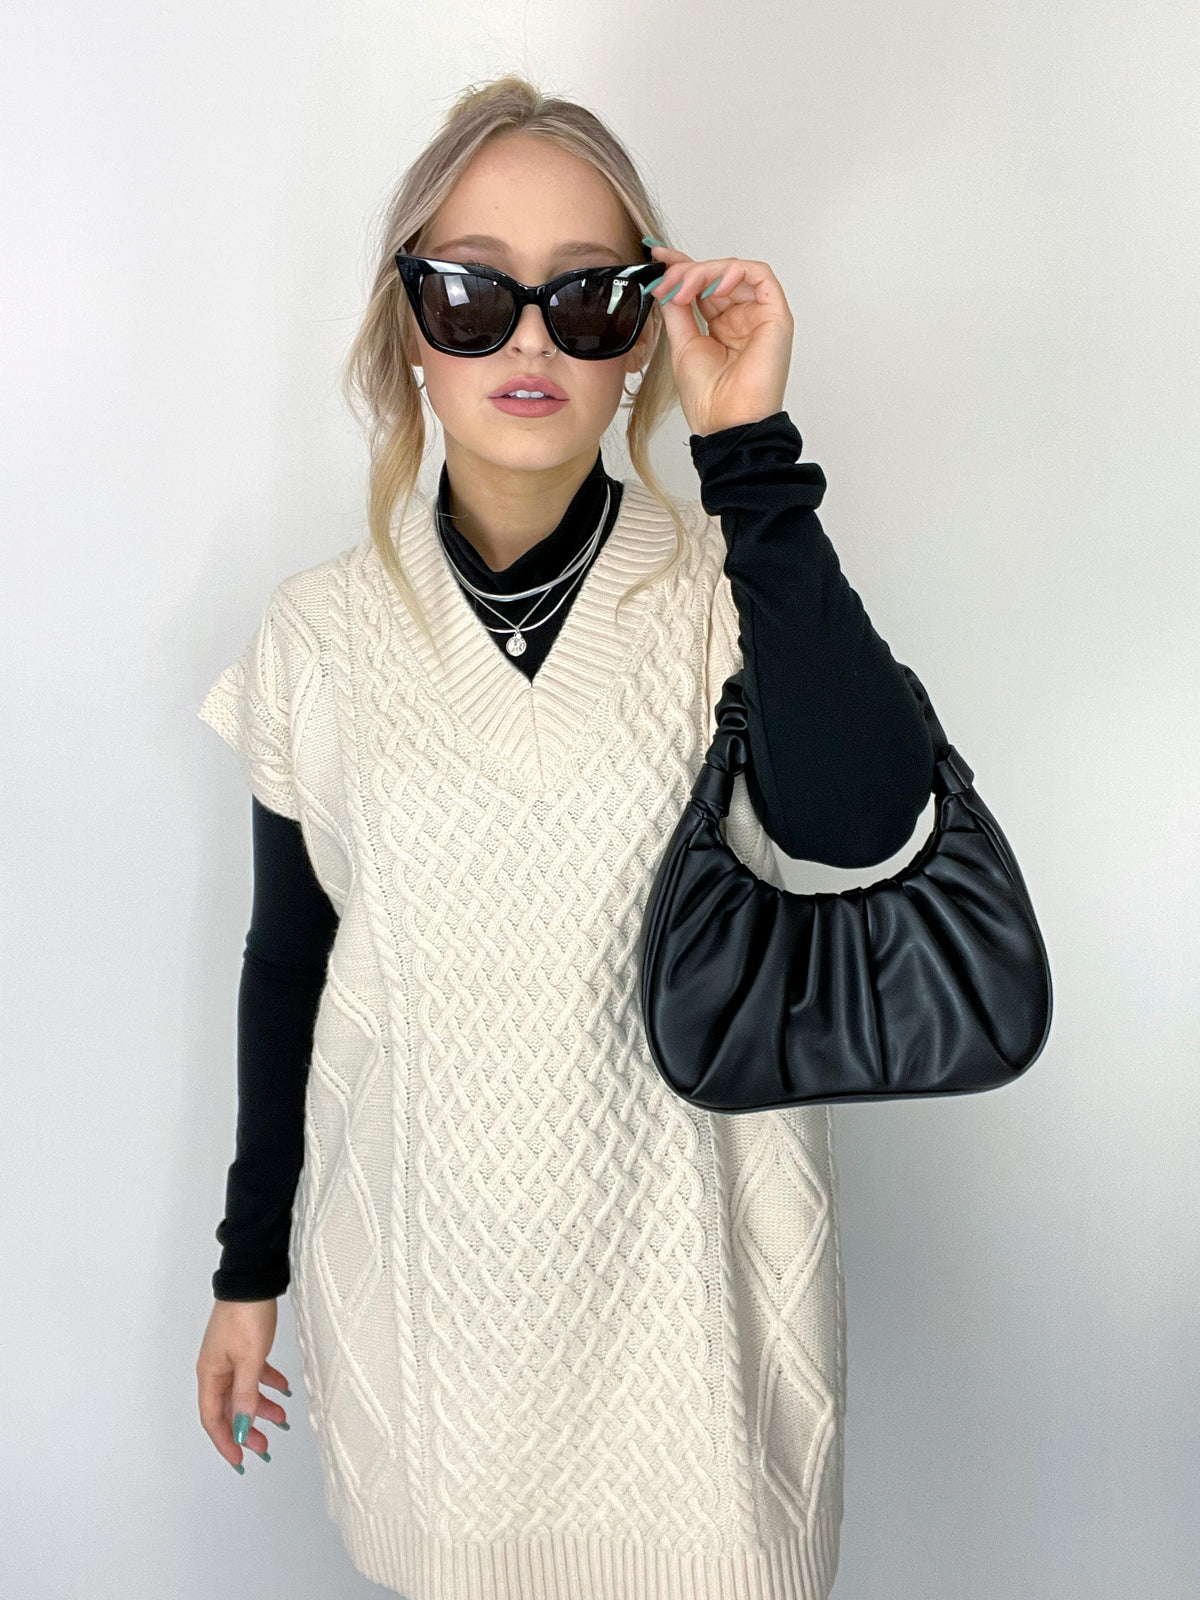 doe niet jogger woordenboek Brielle Oversized Cable Knit Sweater Vest Dress (Cream) – La Belle Boutique